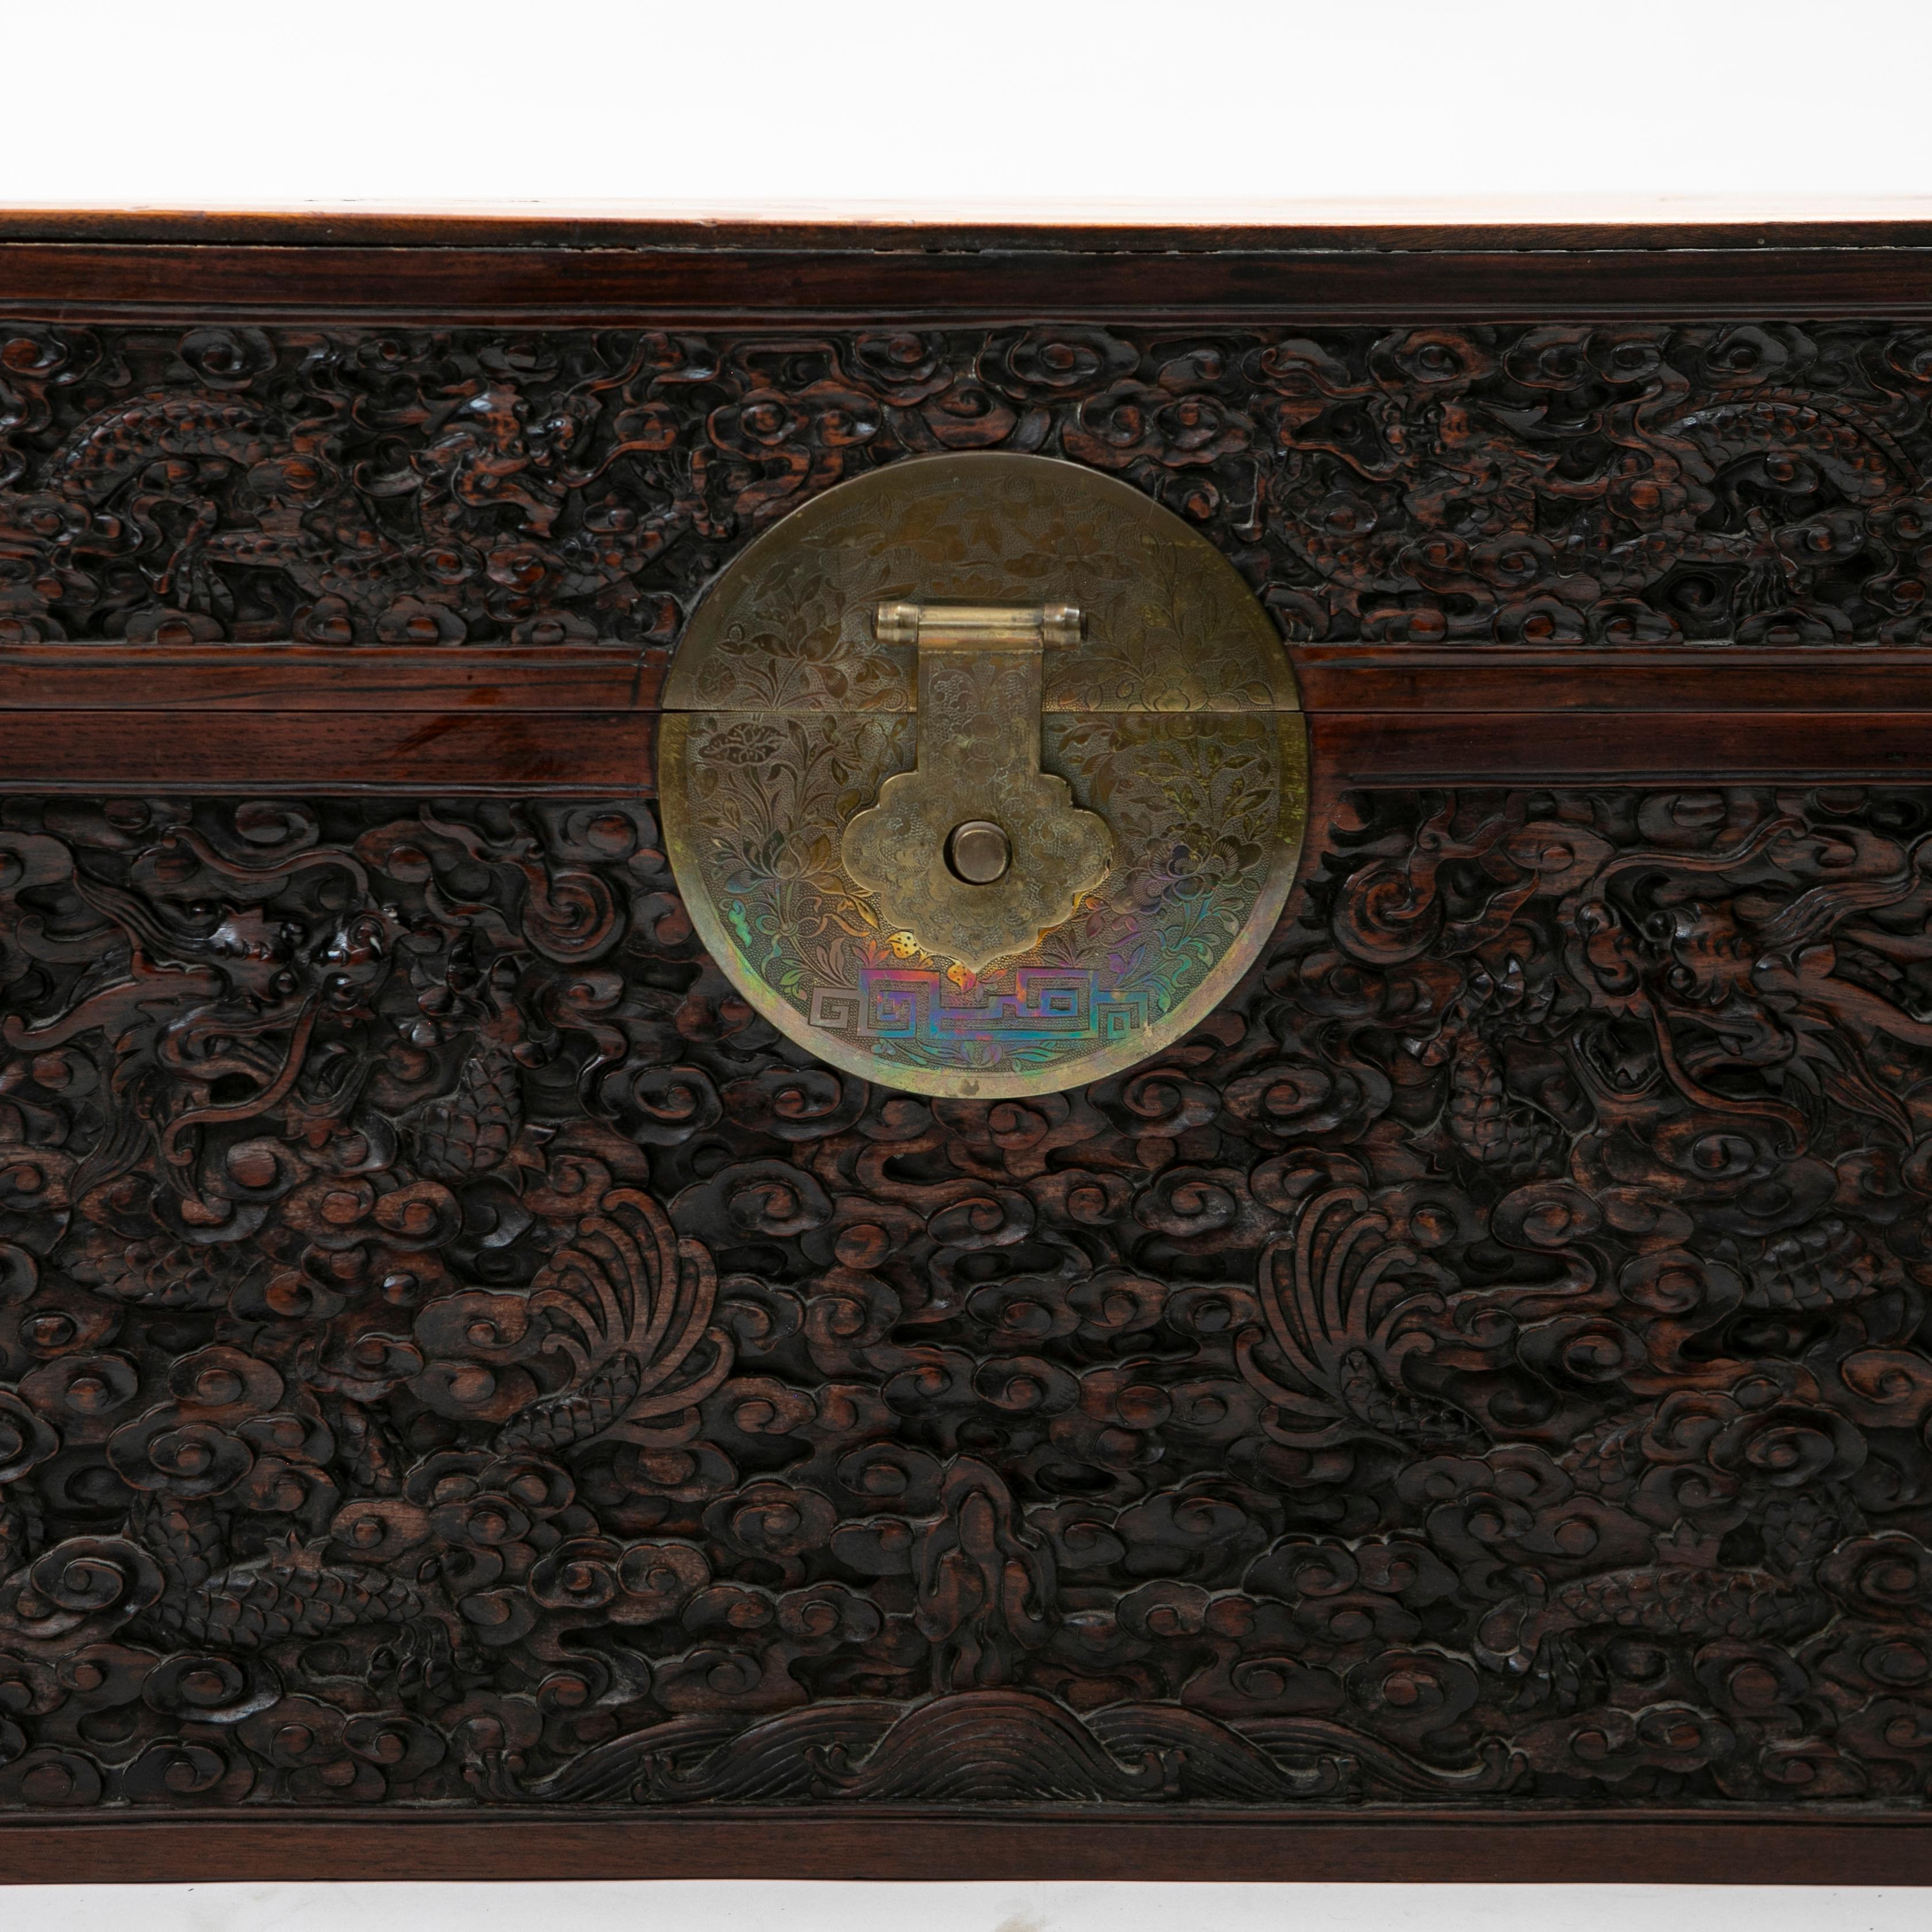 Coffre chinois ancien sculpté en camphre et bois noir.
Façade en bois noir sculpté en relief de dragons dans le ciel / les nuages.
Muni d'un médaillon d'origine en laiton, richement ciselé en forme de fleurs et de feuillages.

État d'origine